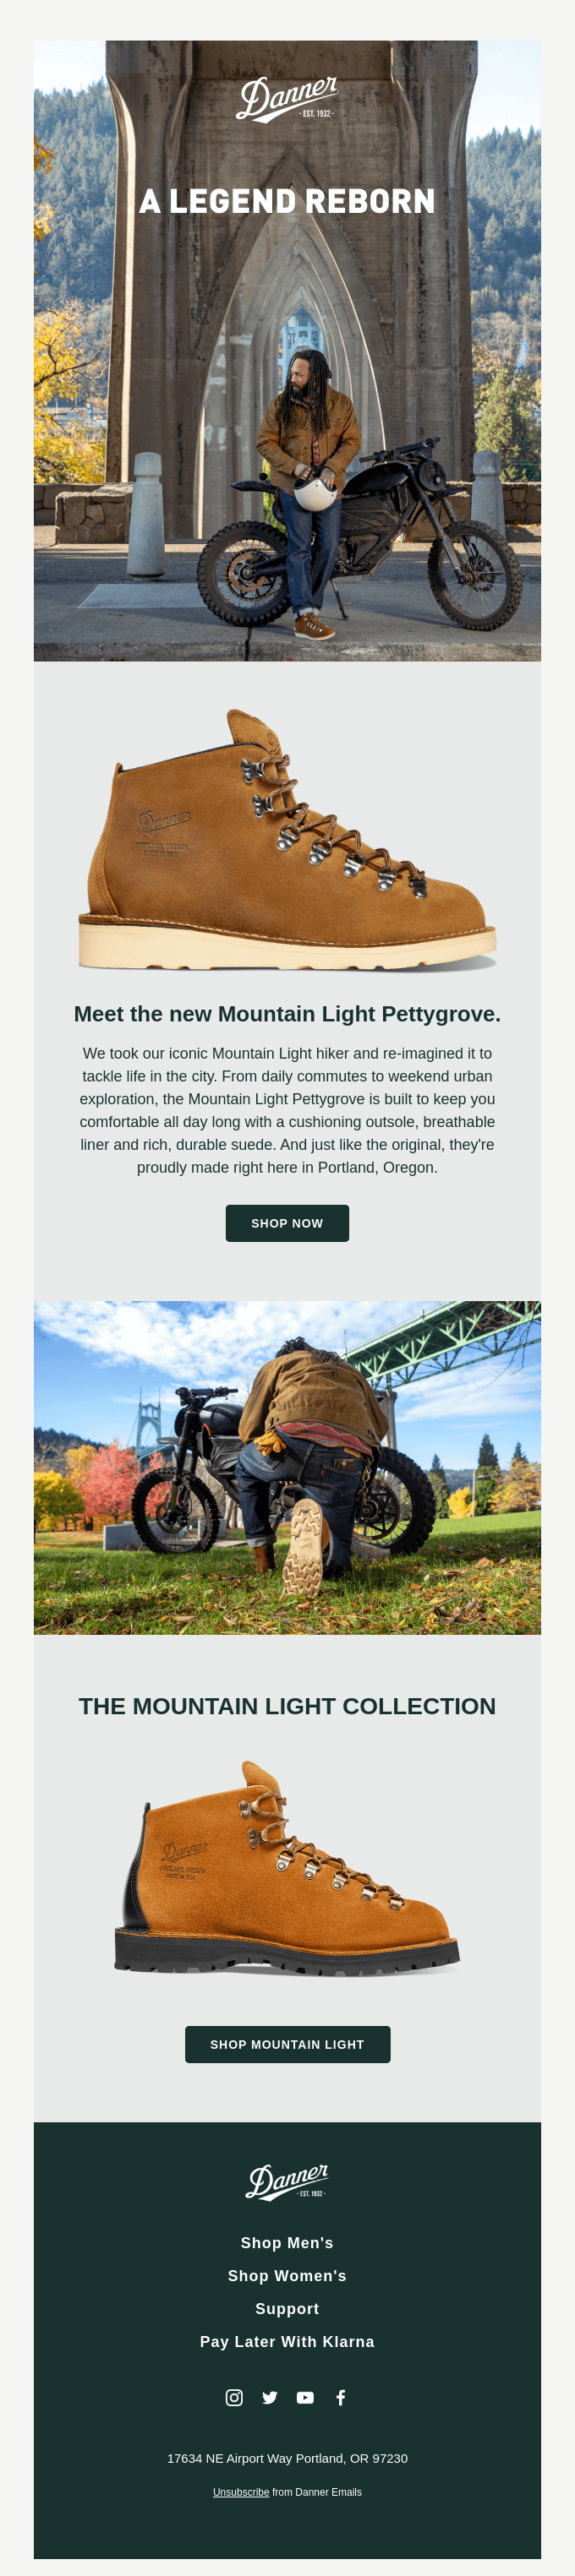 Meet the New Mountain Light Pettygrove